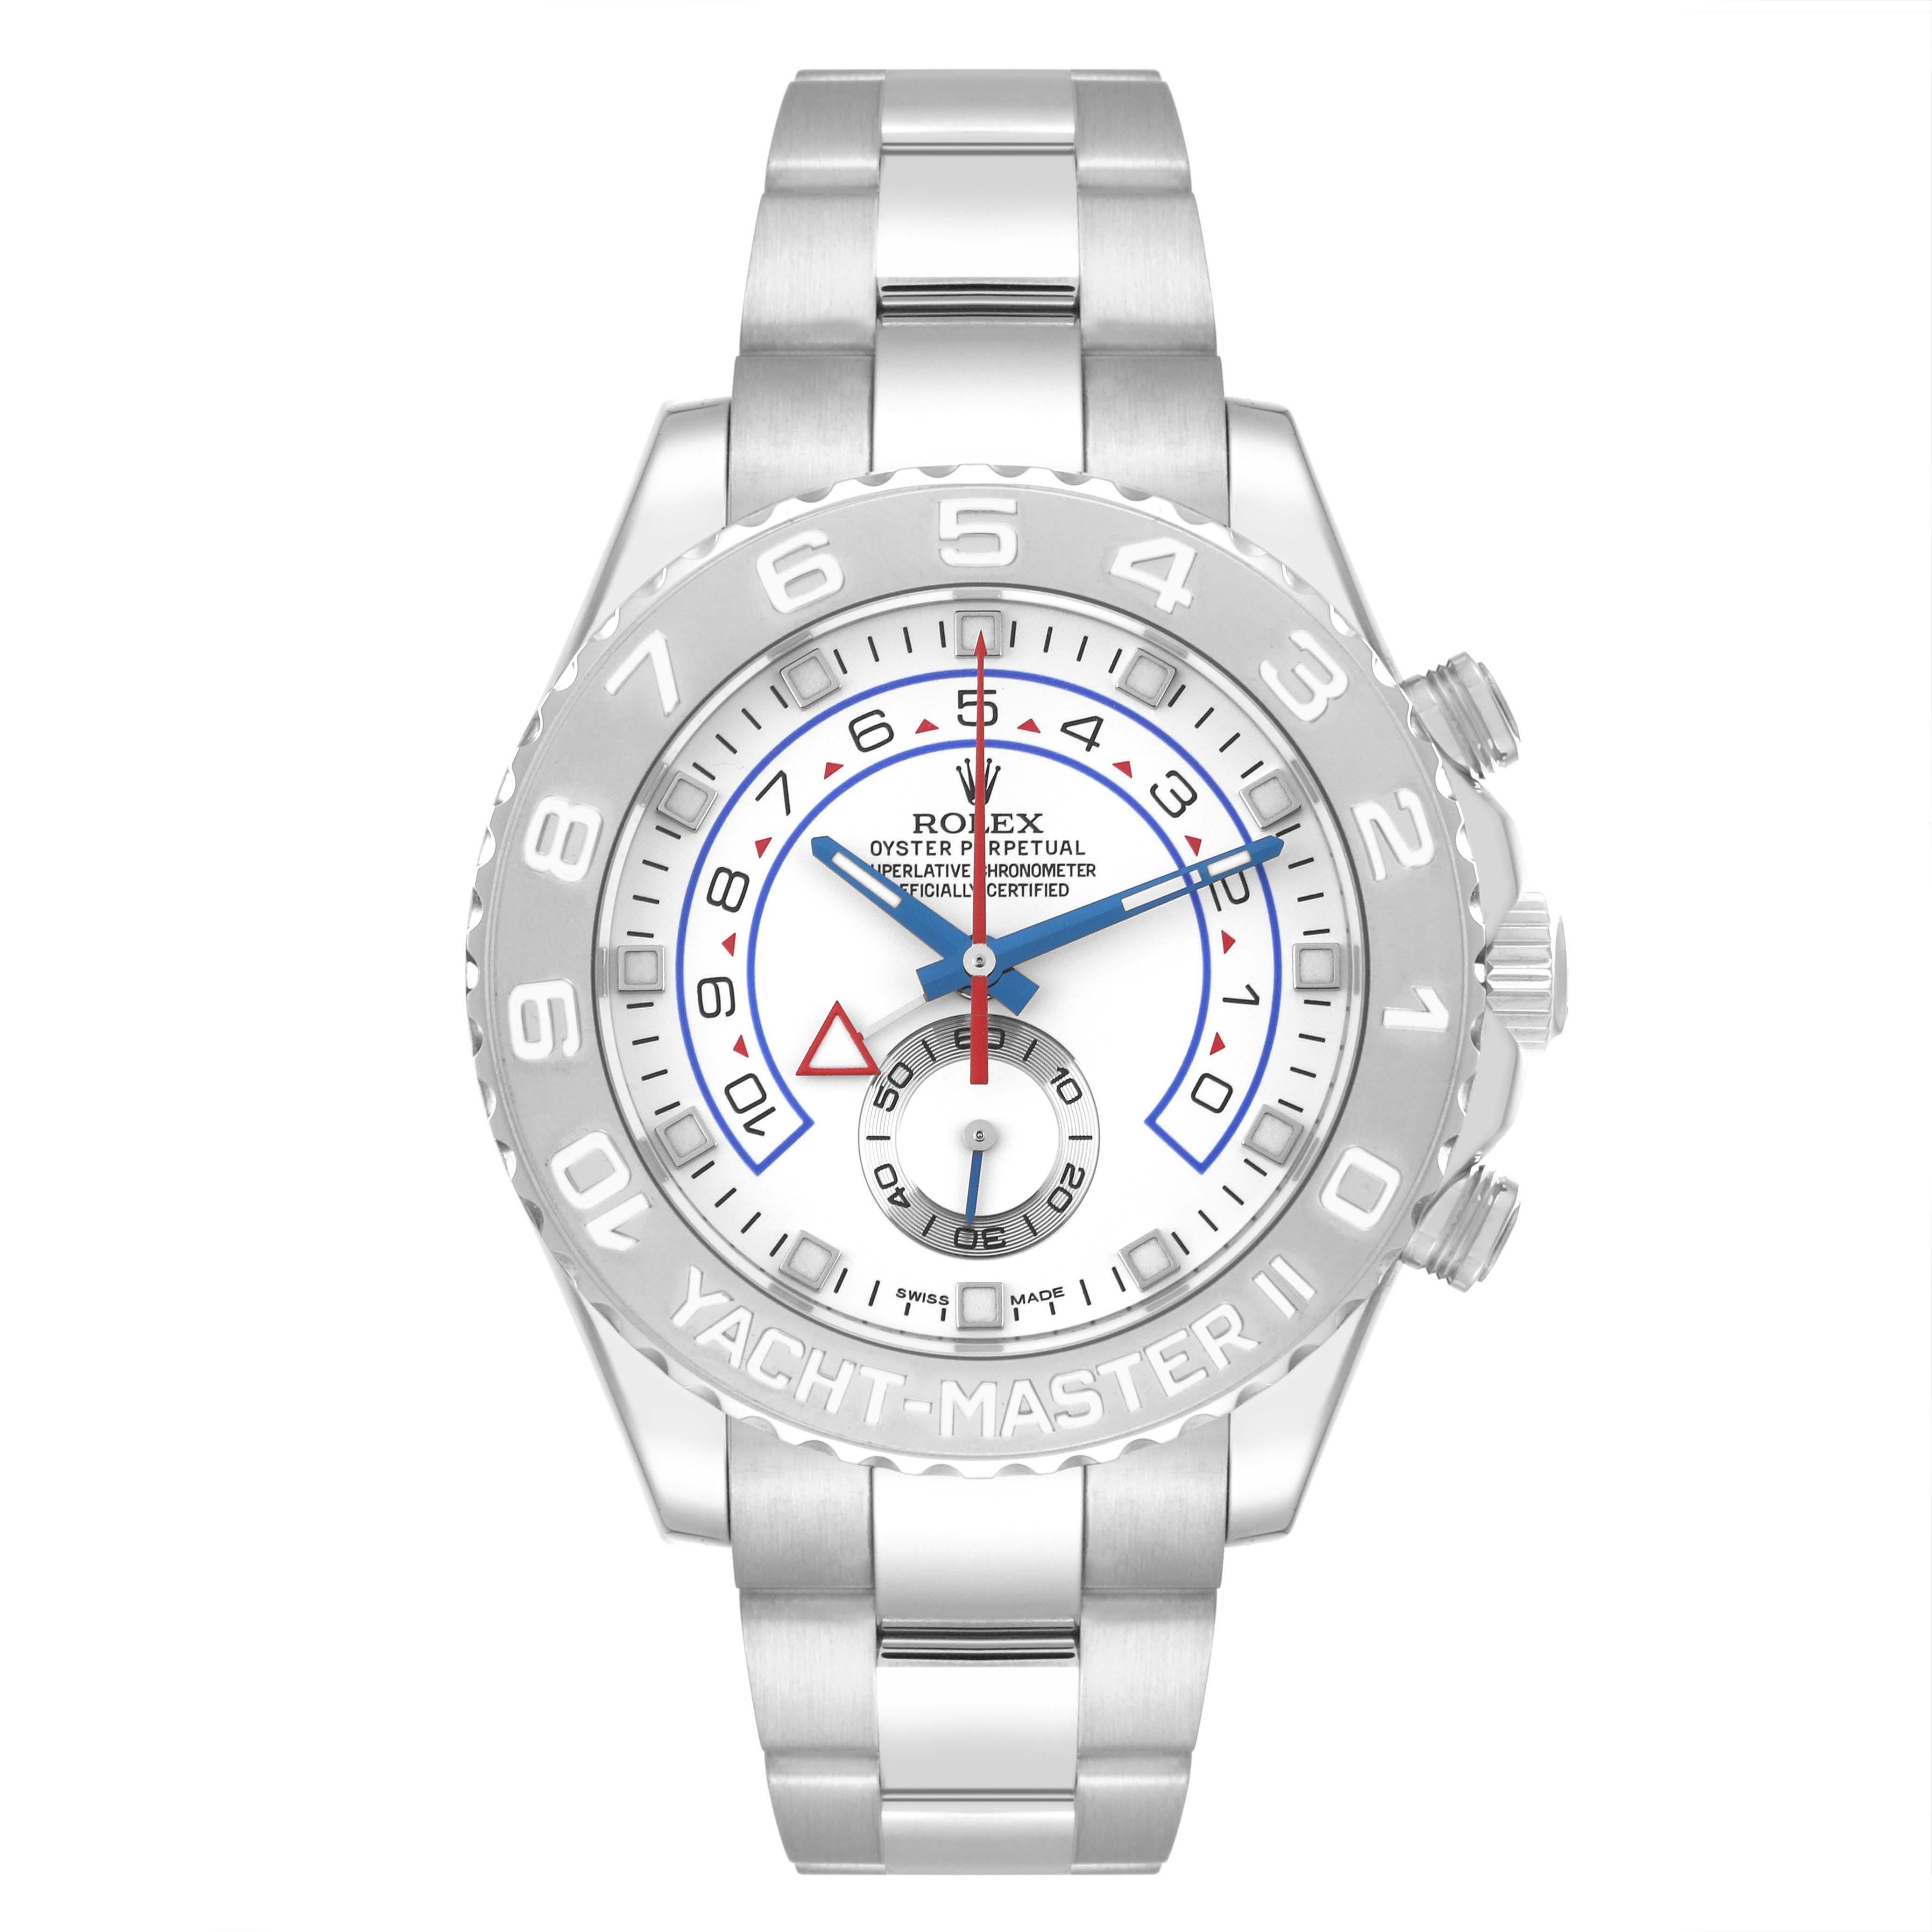 Men's Rolex Yachtmaster II Regatta White Gold Platinum Mens Watch 116689 Box Card